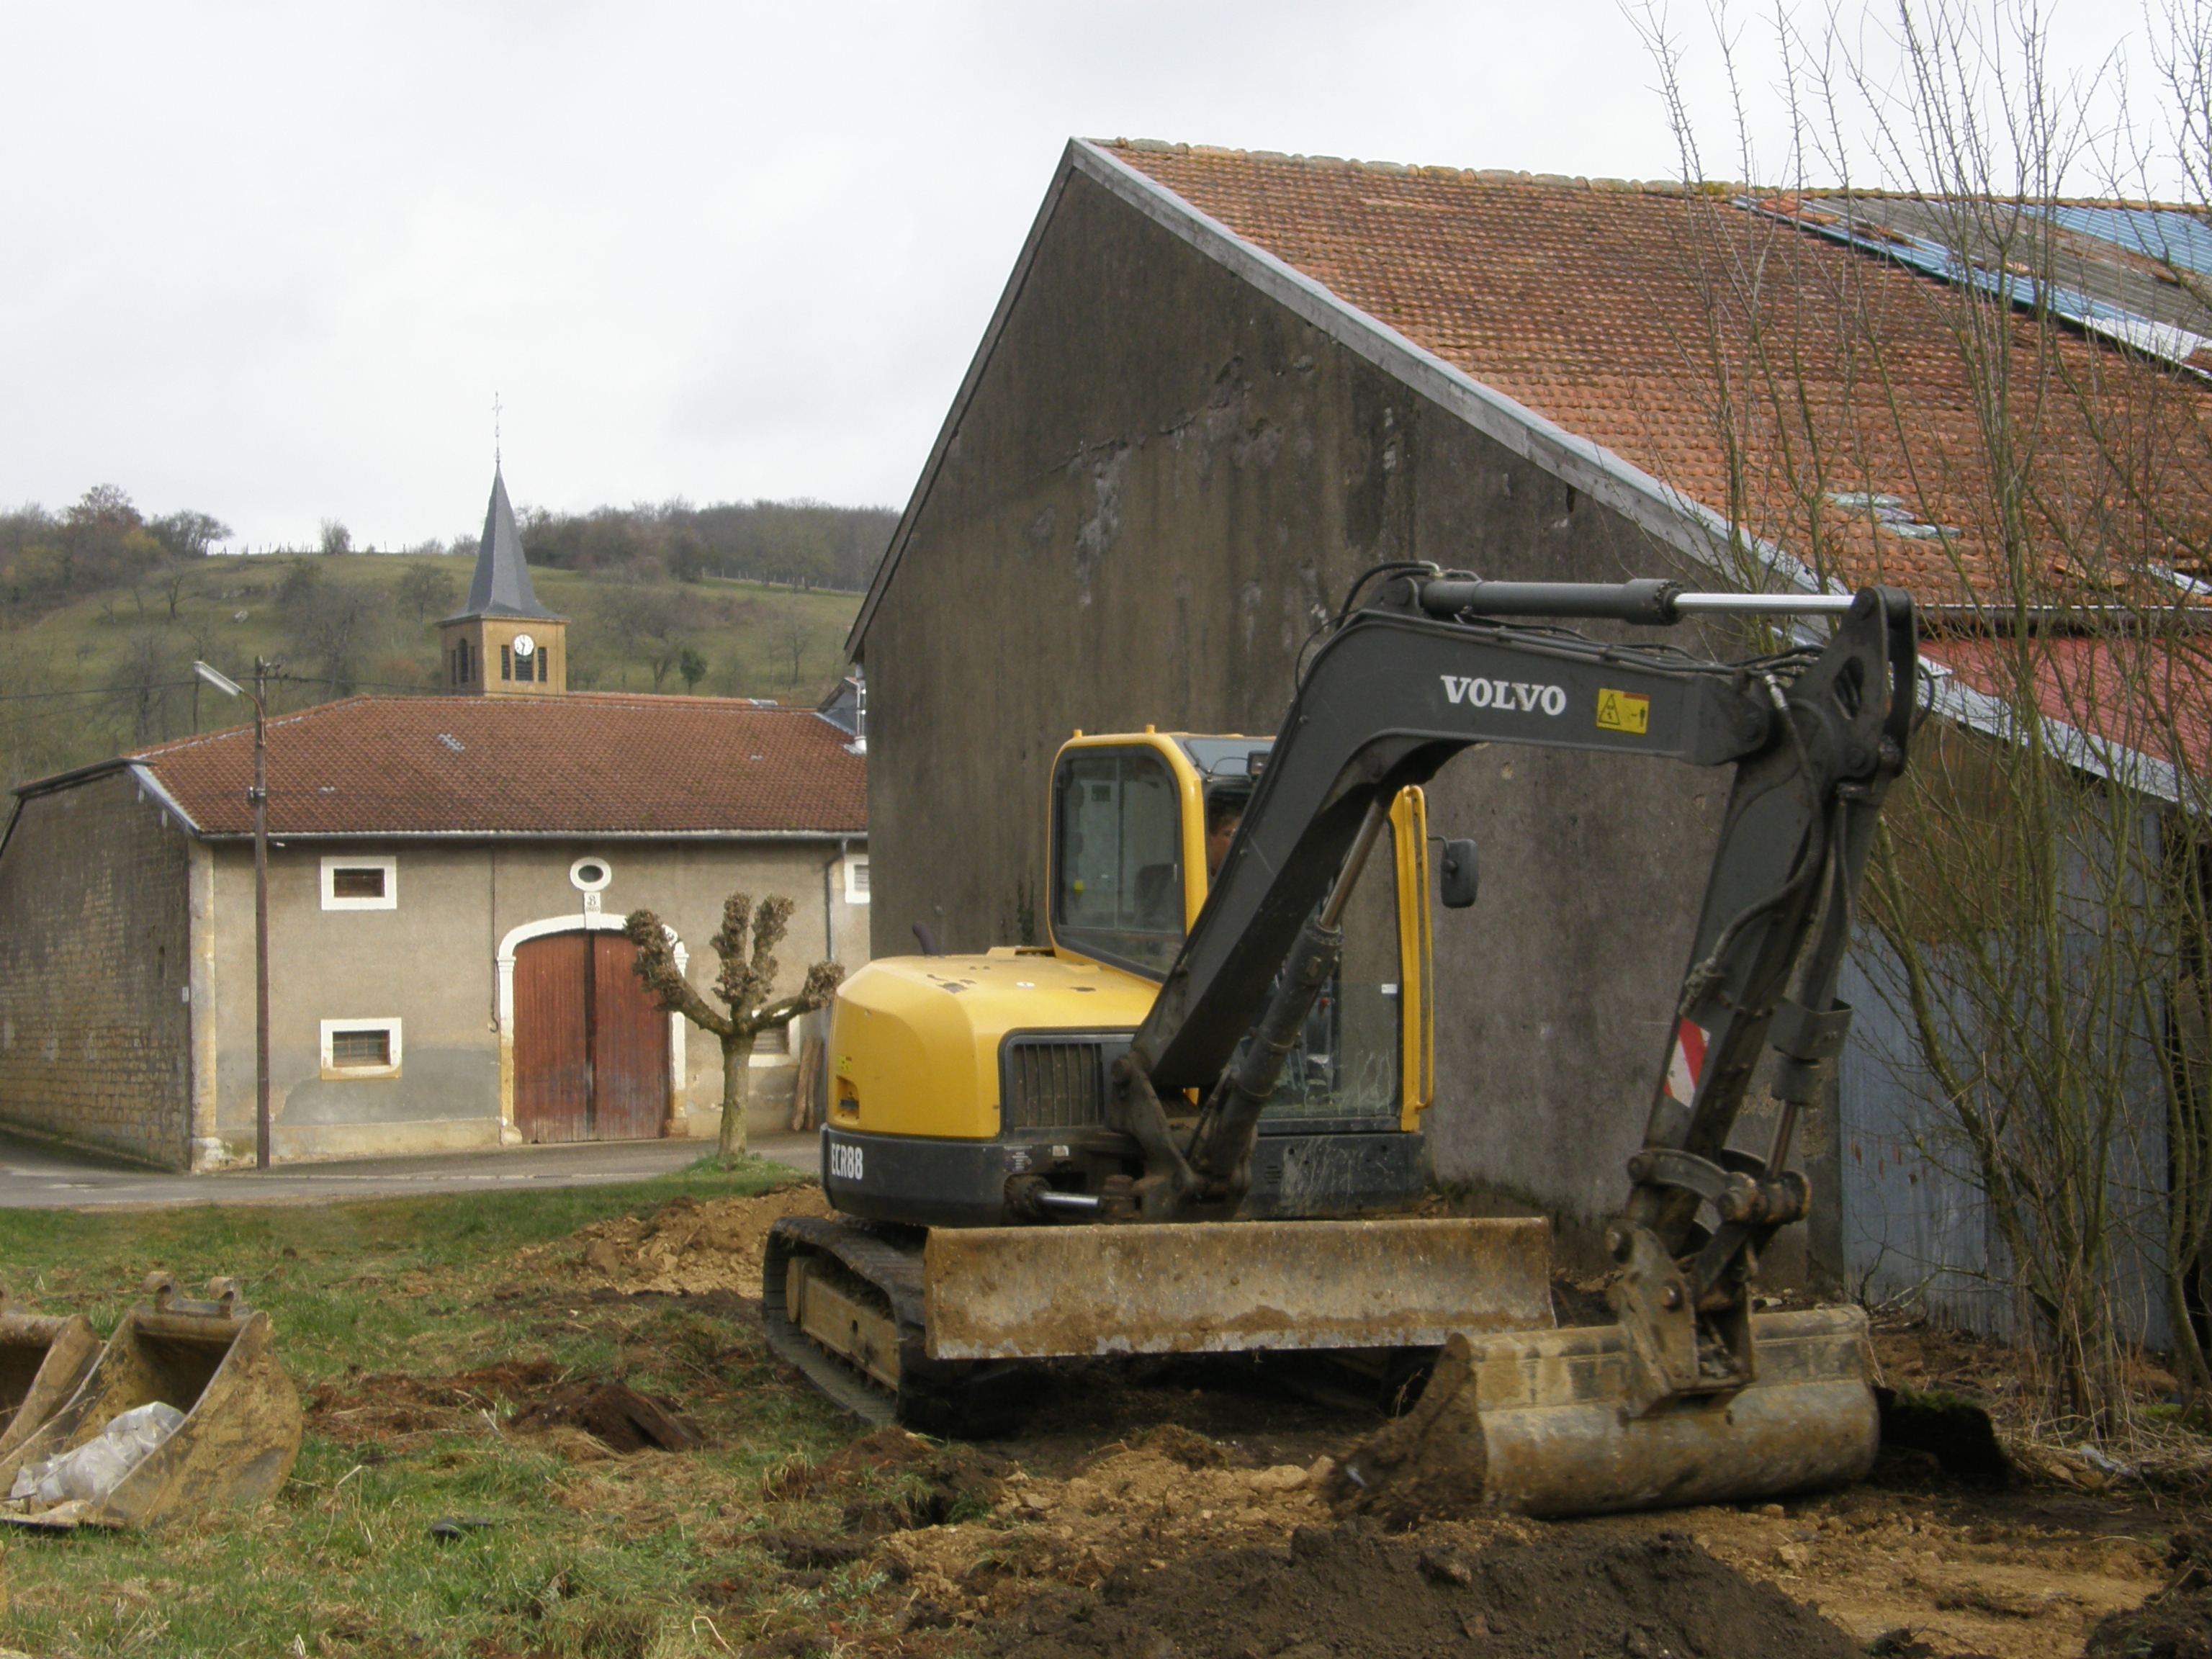 Le terrassement prépare un sol solide en y déplaçant de la terre.  © N.C, CC BY-SA 3.0, Wikimedia Commons